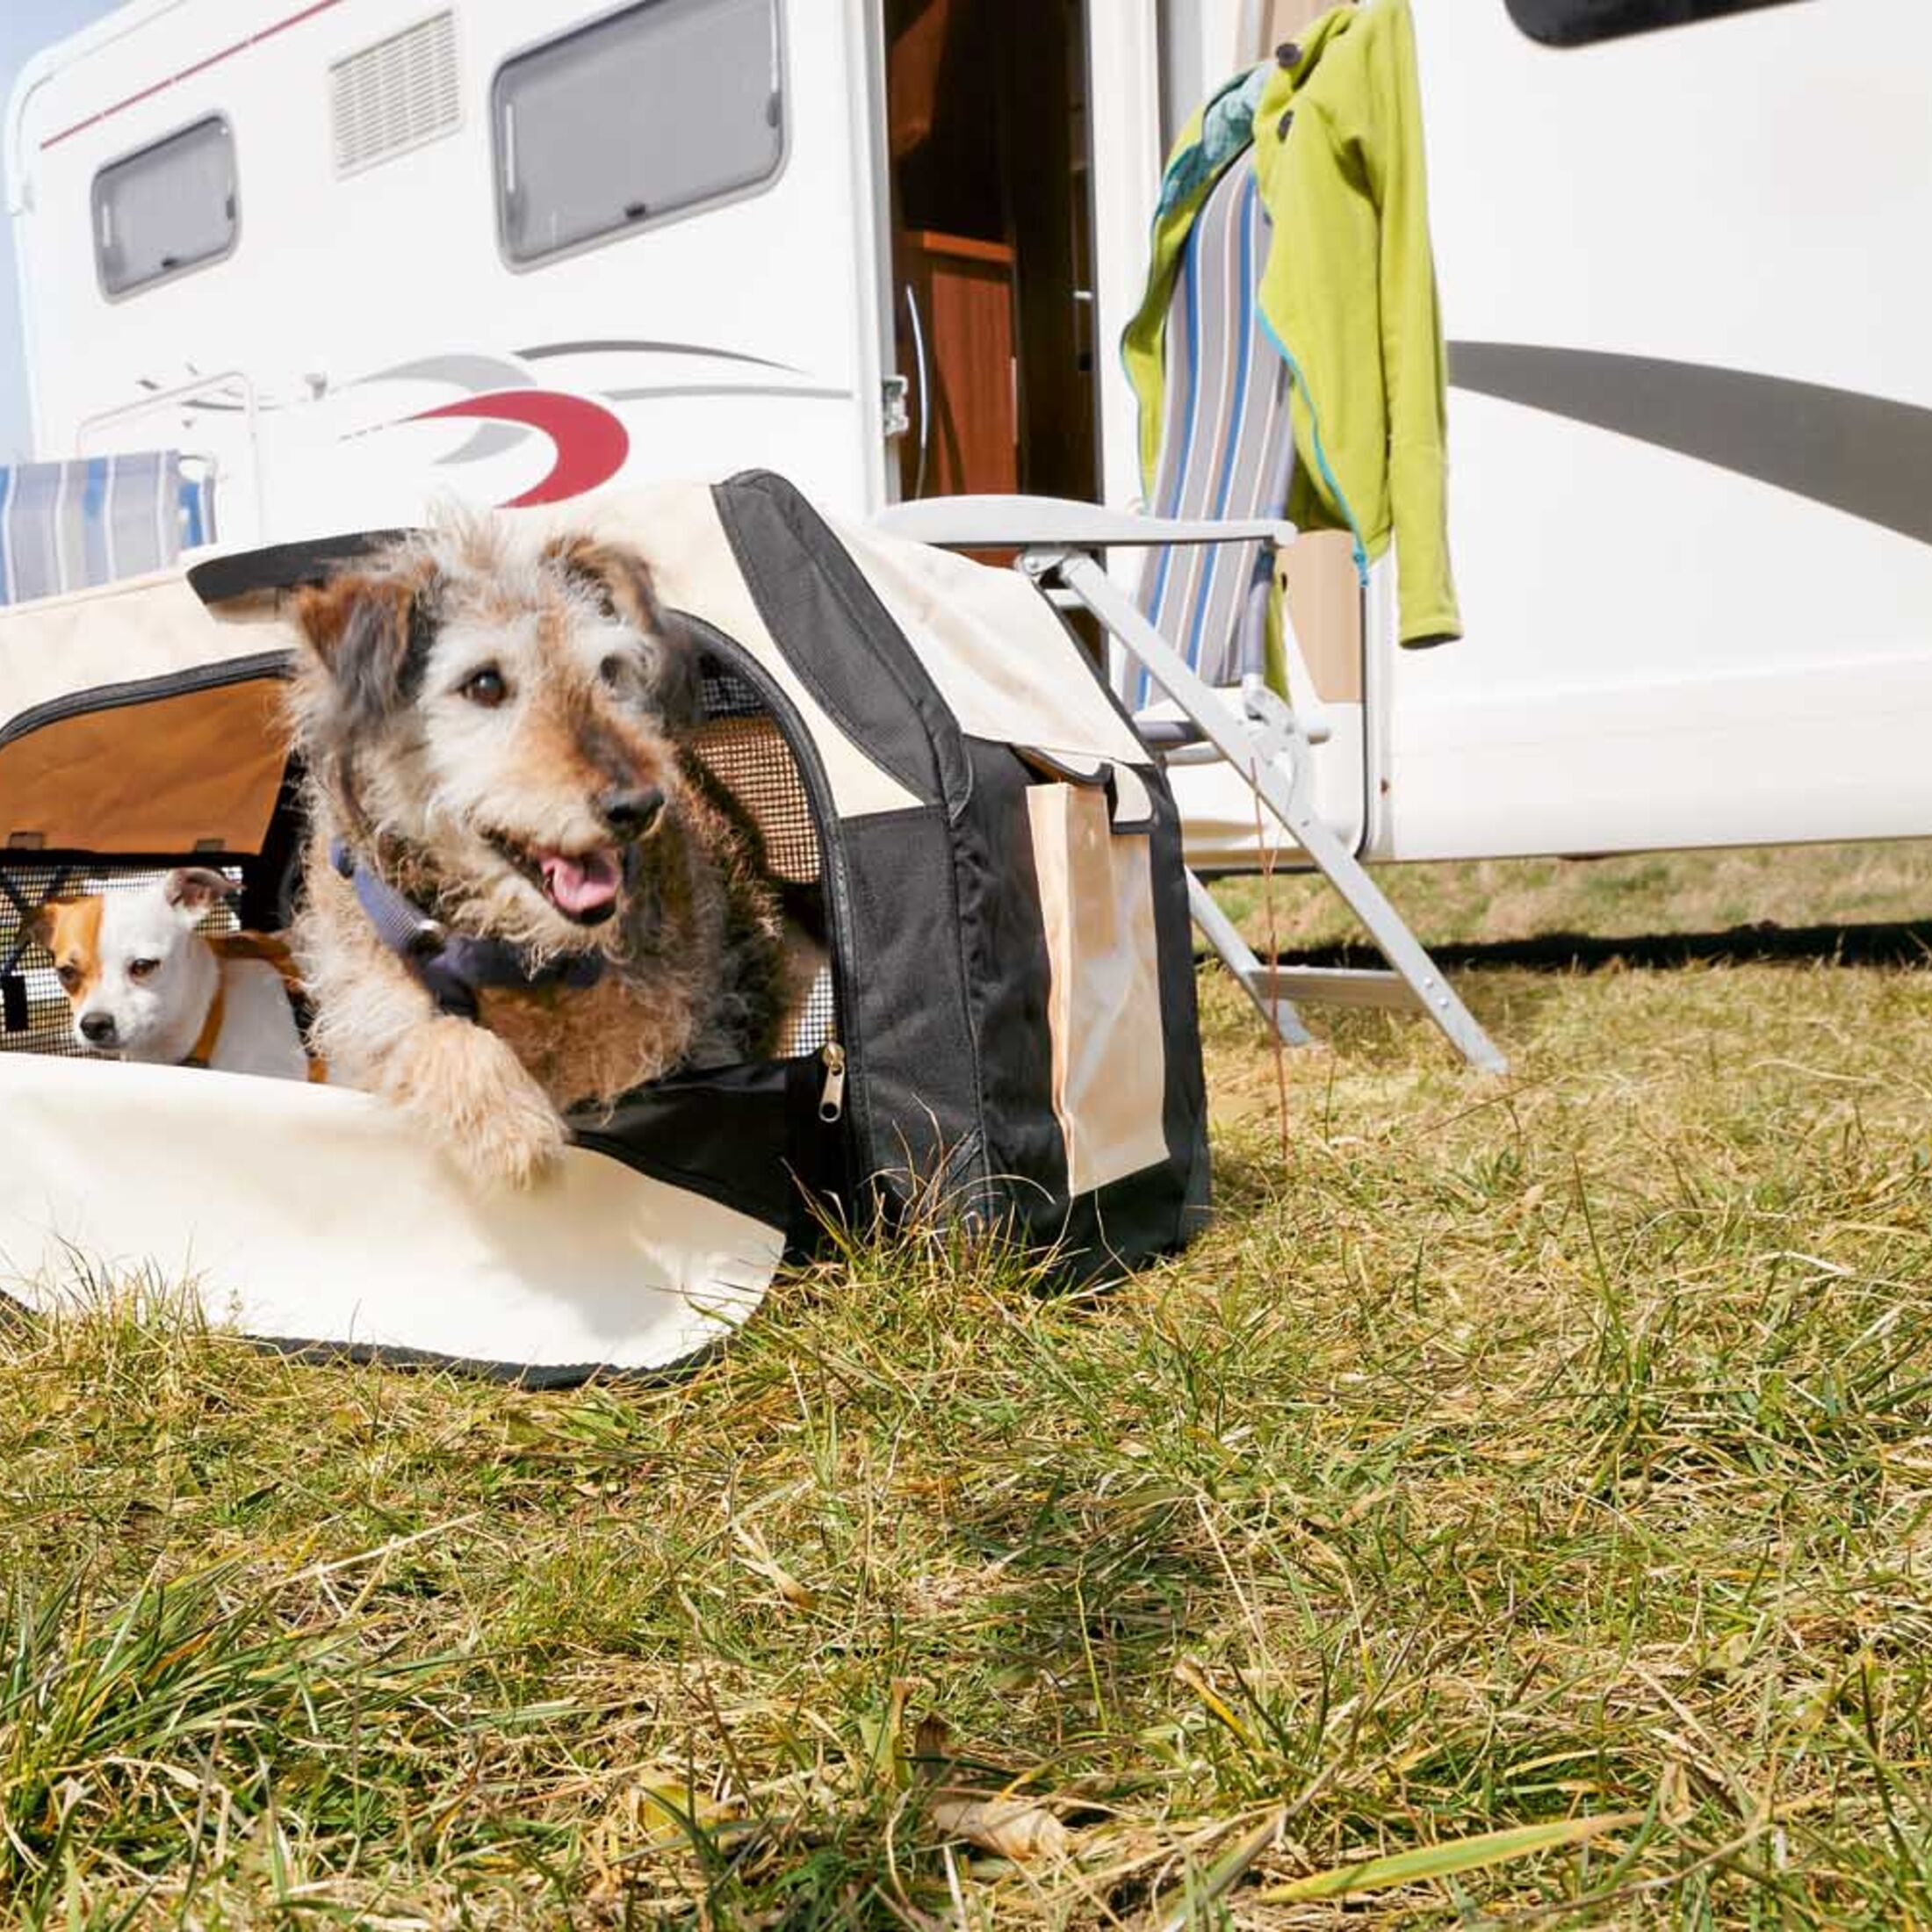 Camping-Zubehör für Urlaub mit dem Hund